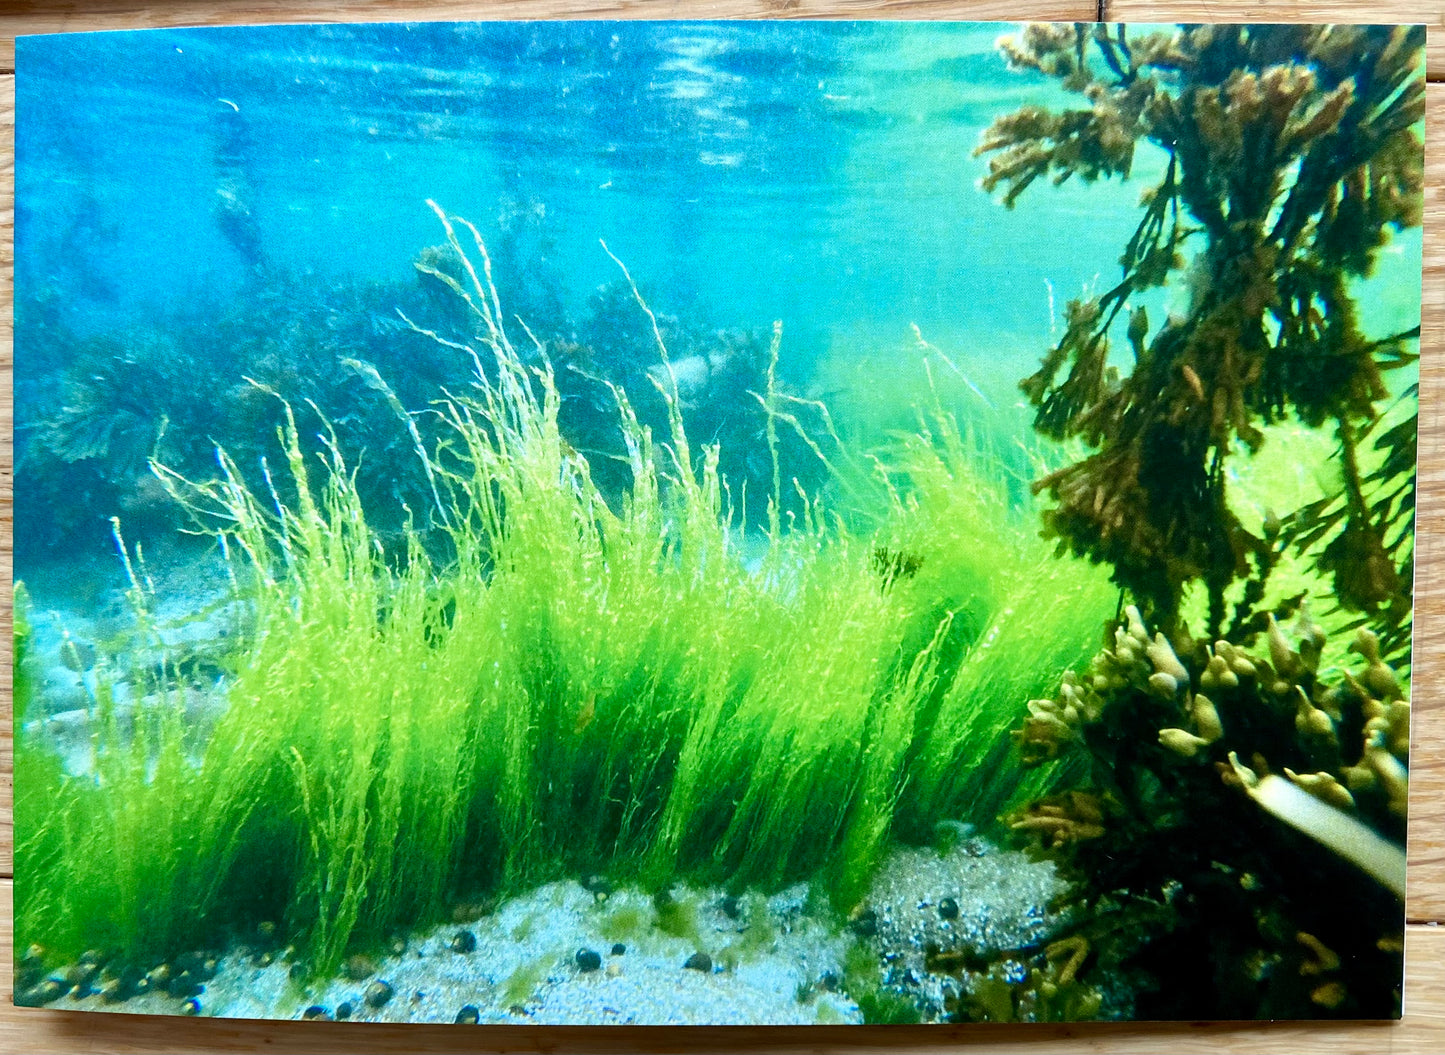 Underwater Printed Cards | Pack of 5